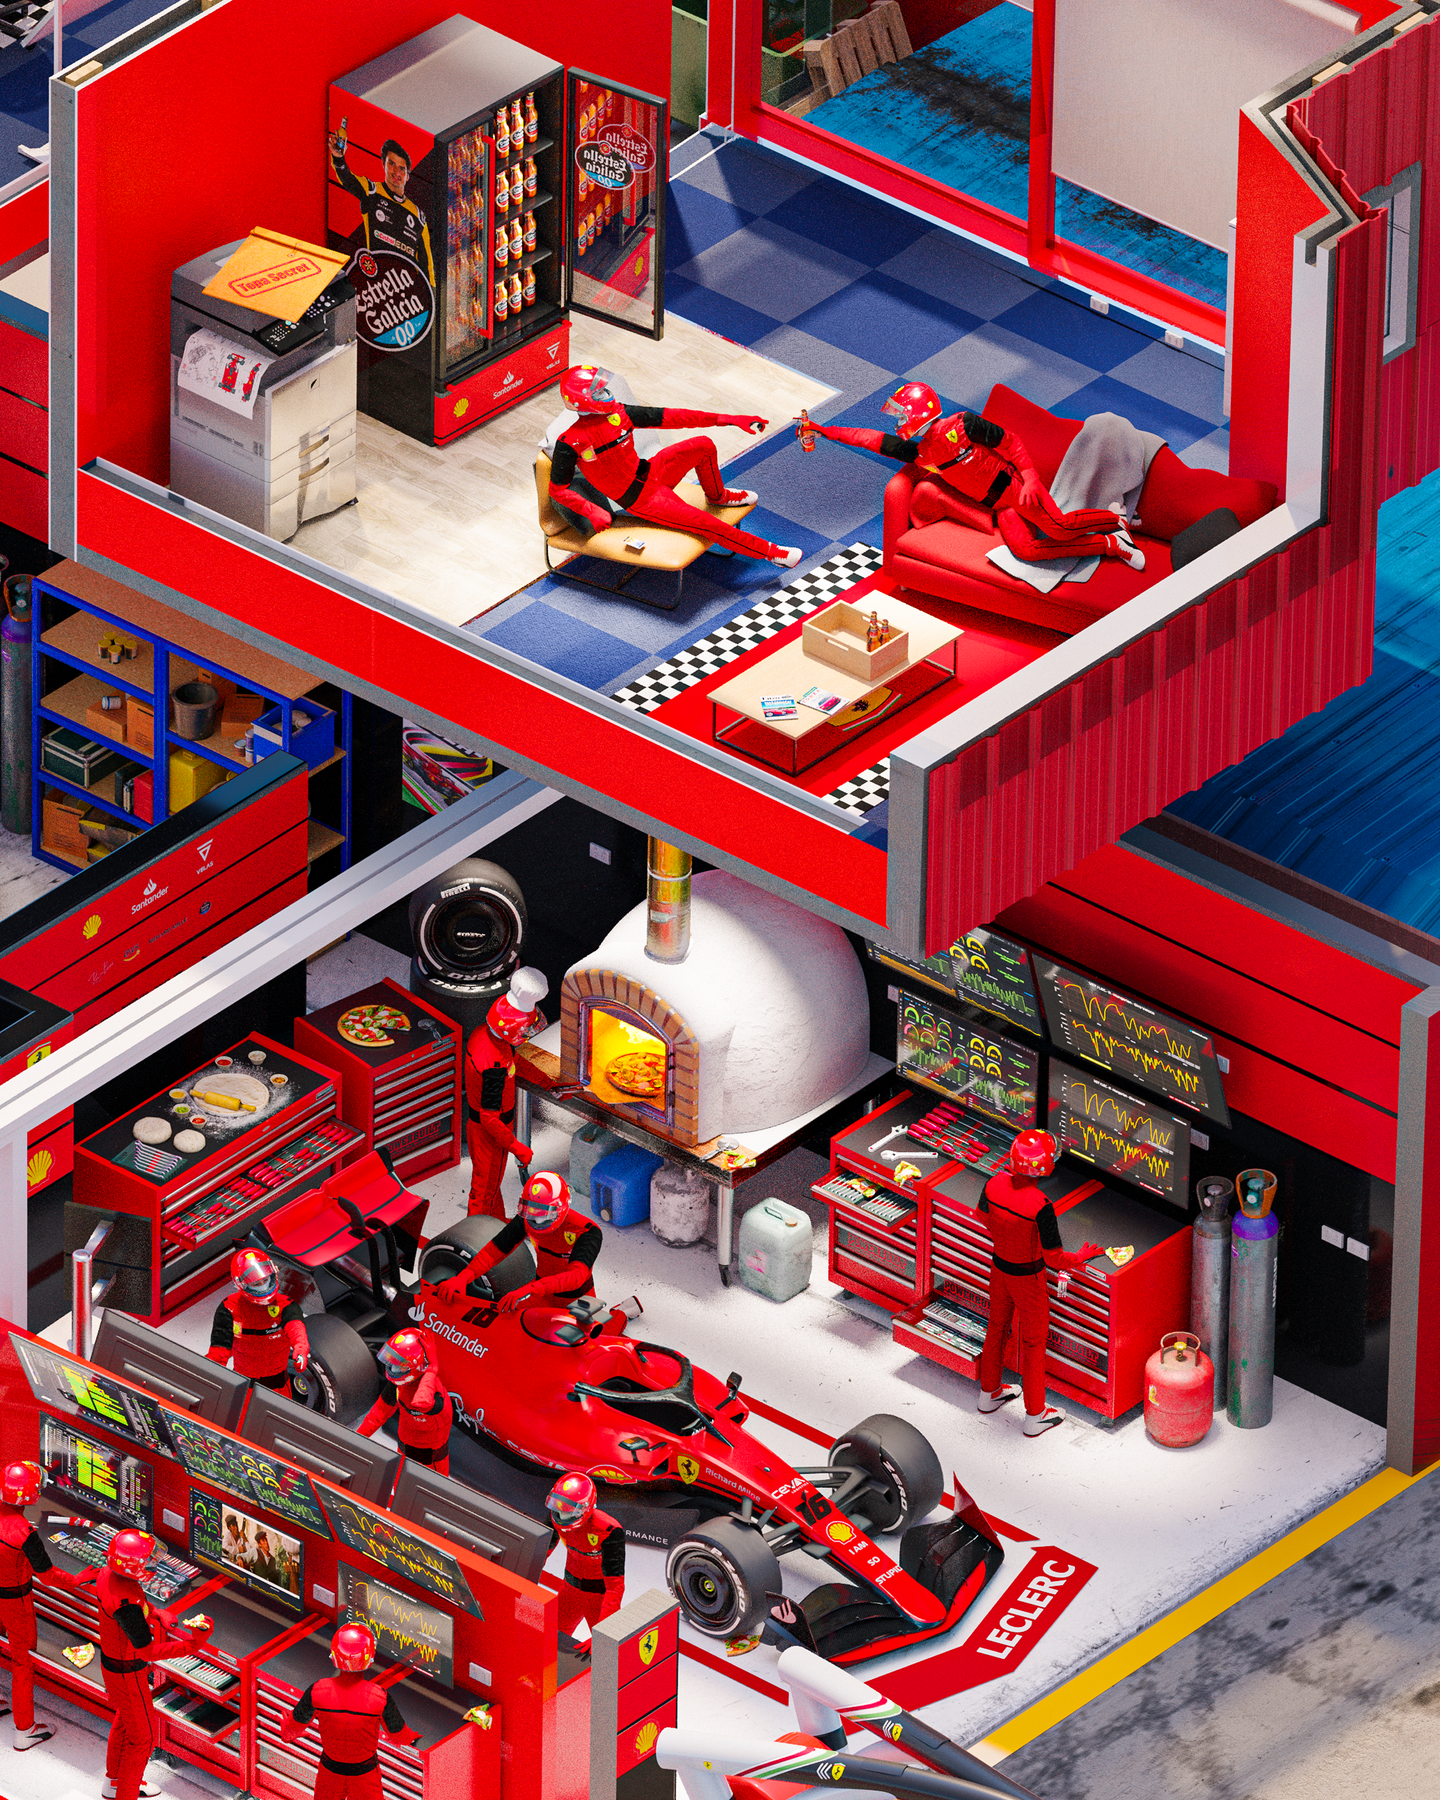 Parody cutaway illustration of the Ferrari Formula 1 garage